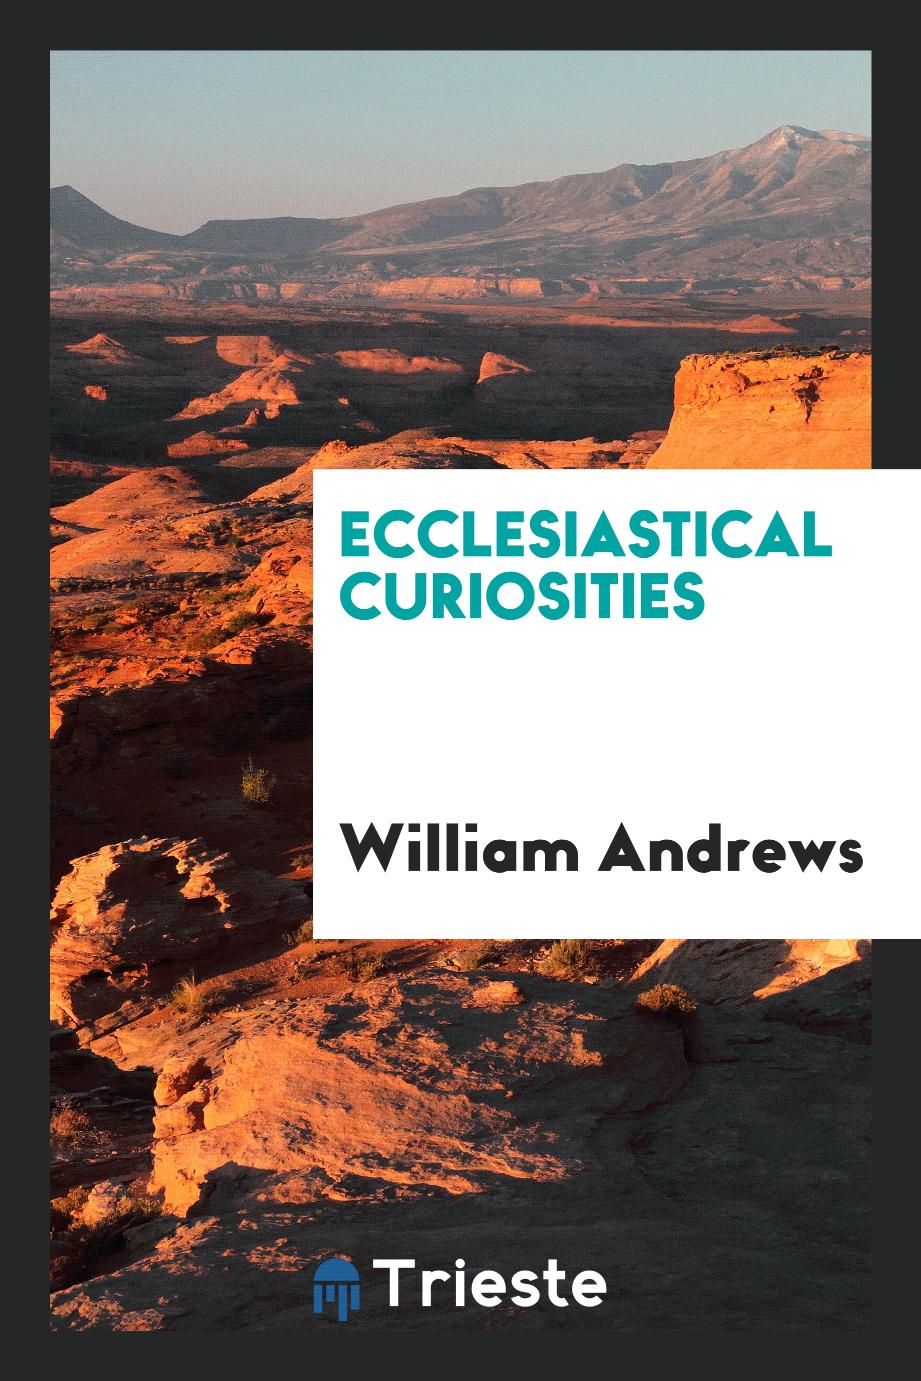 William Andrews - Ecclesiastical Curiosities